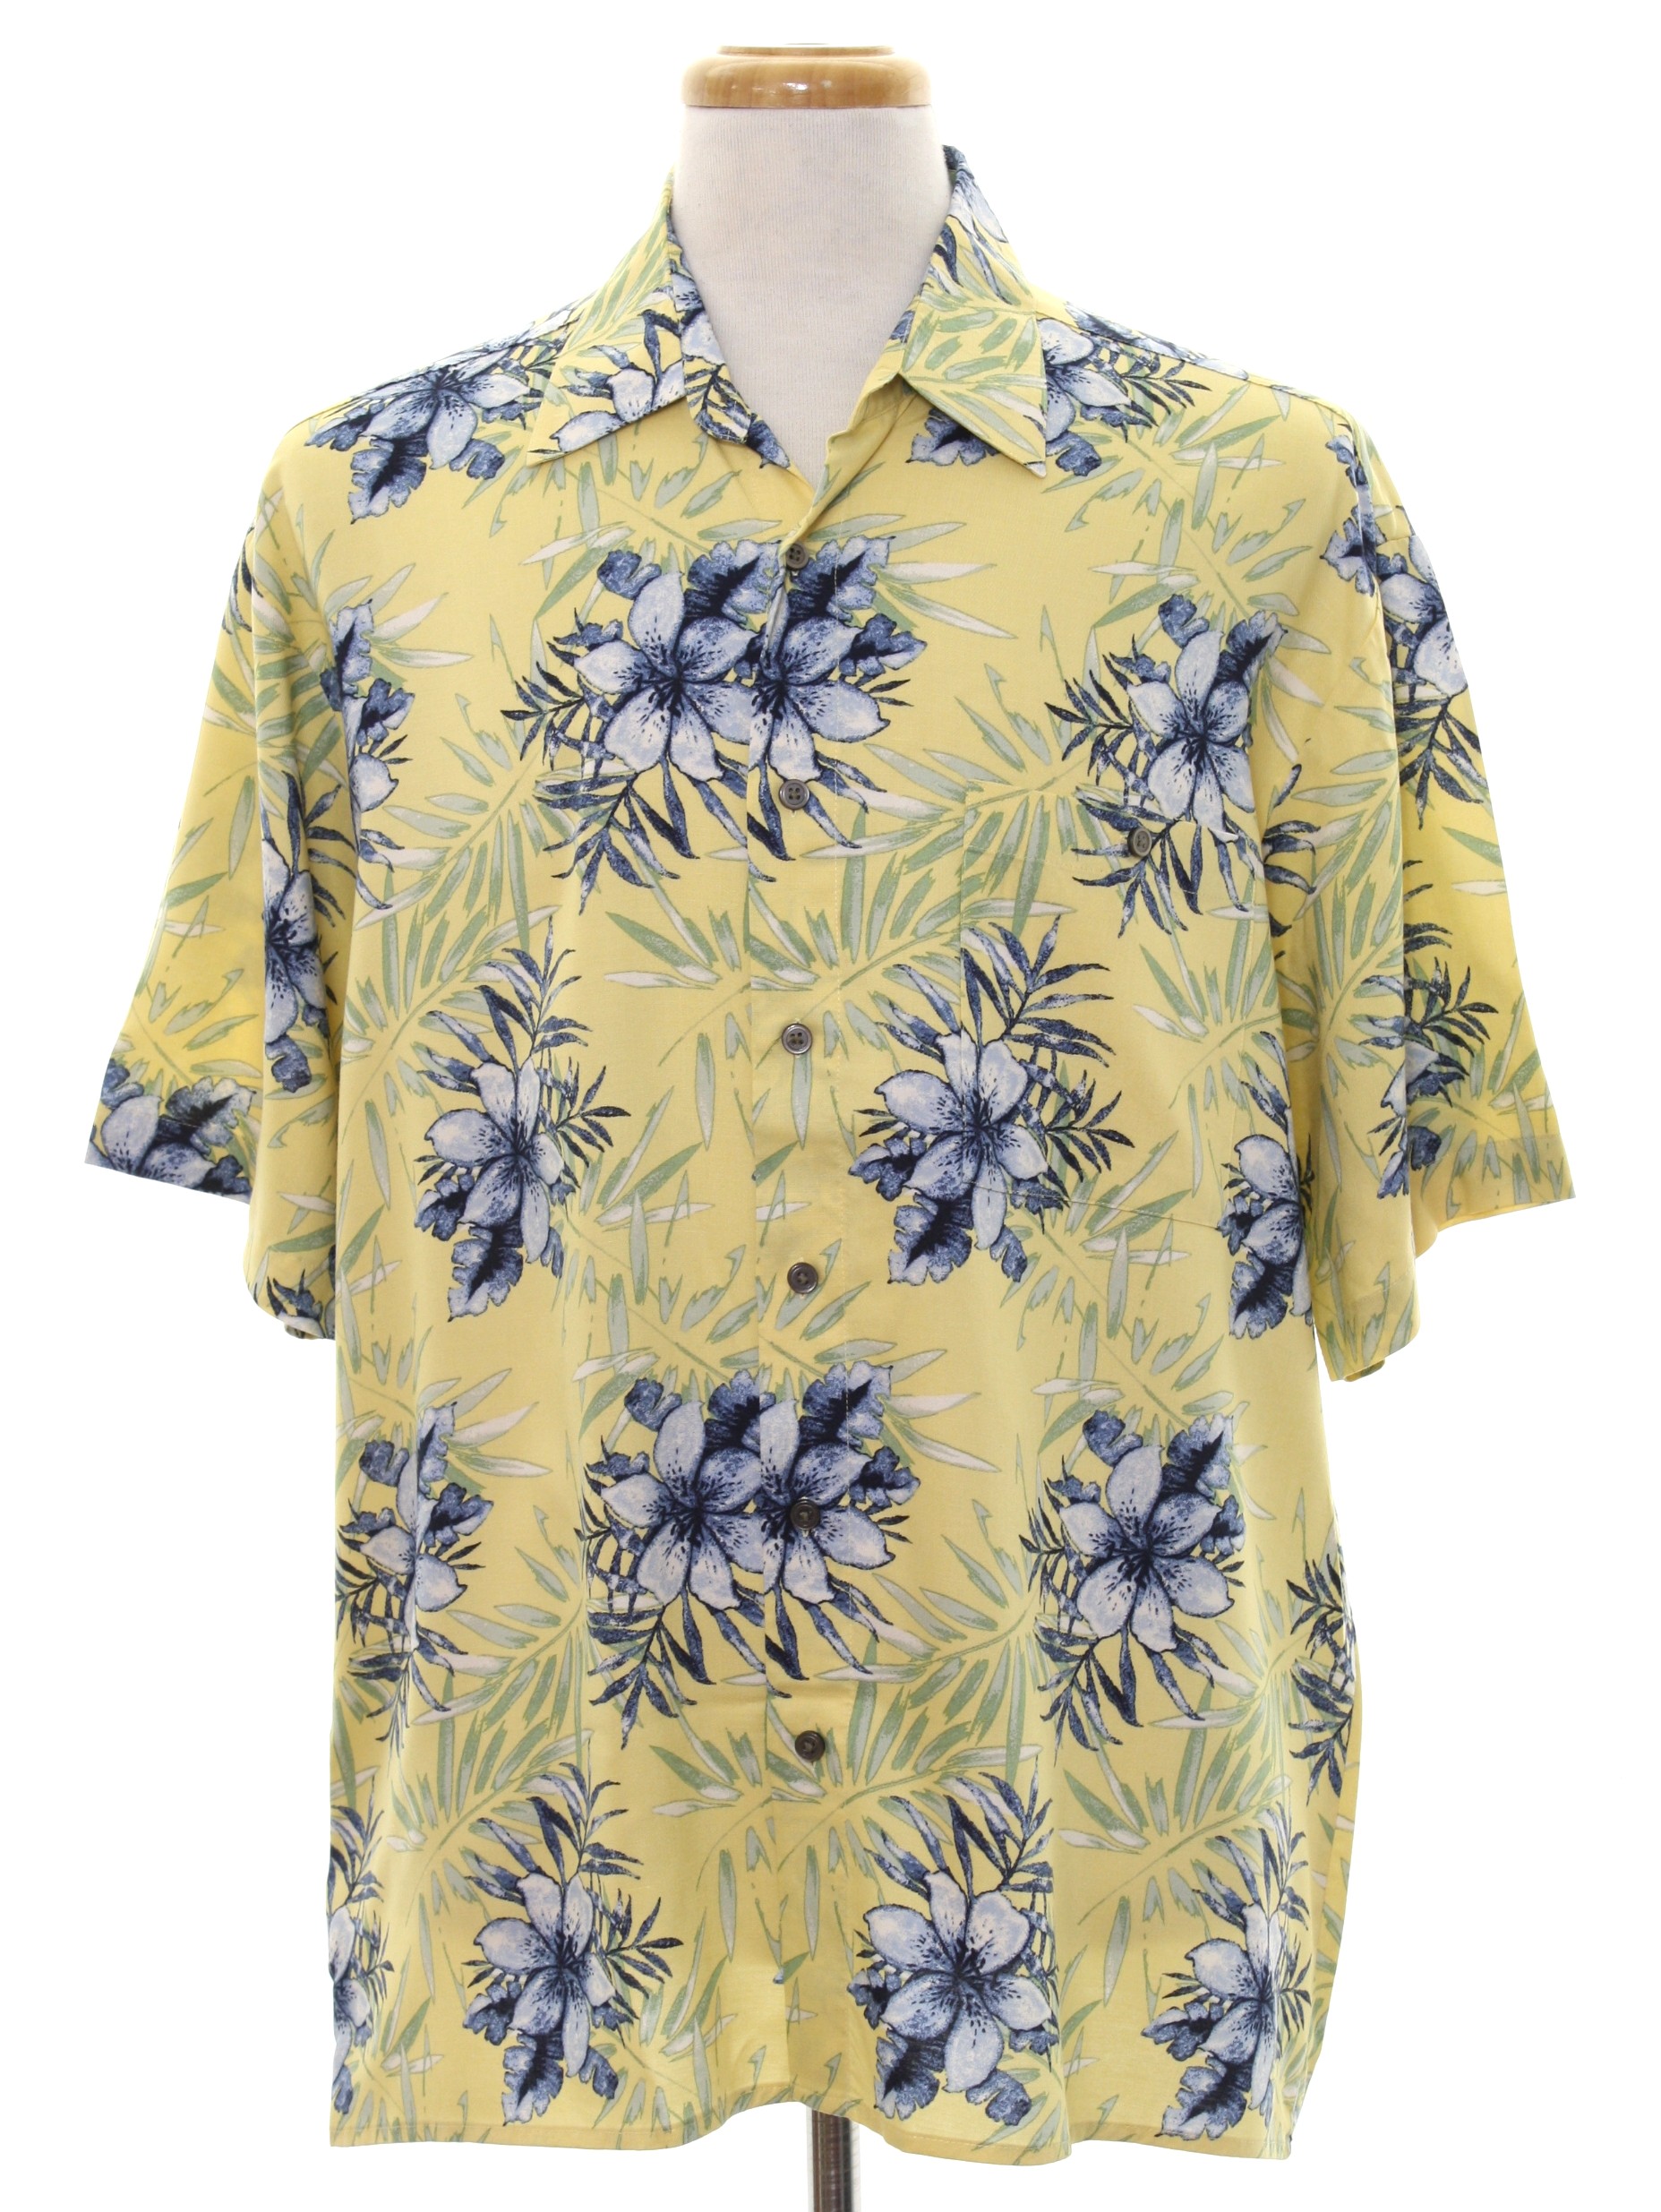 Munsingwear Eighties Vintage Hawaiian Shirt: 80s -Munsingwear- Mens ...